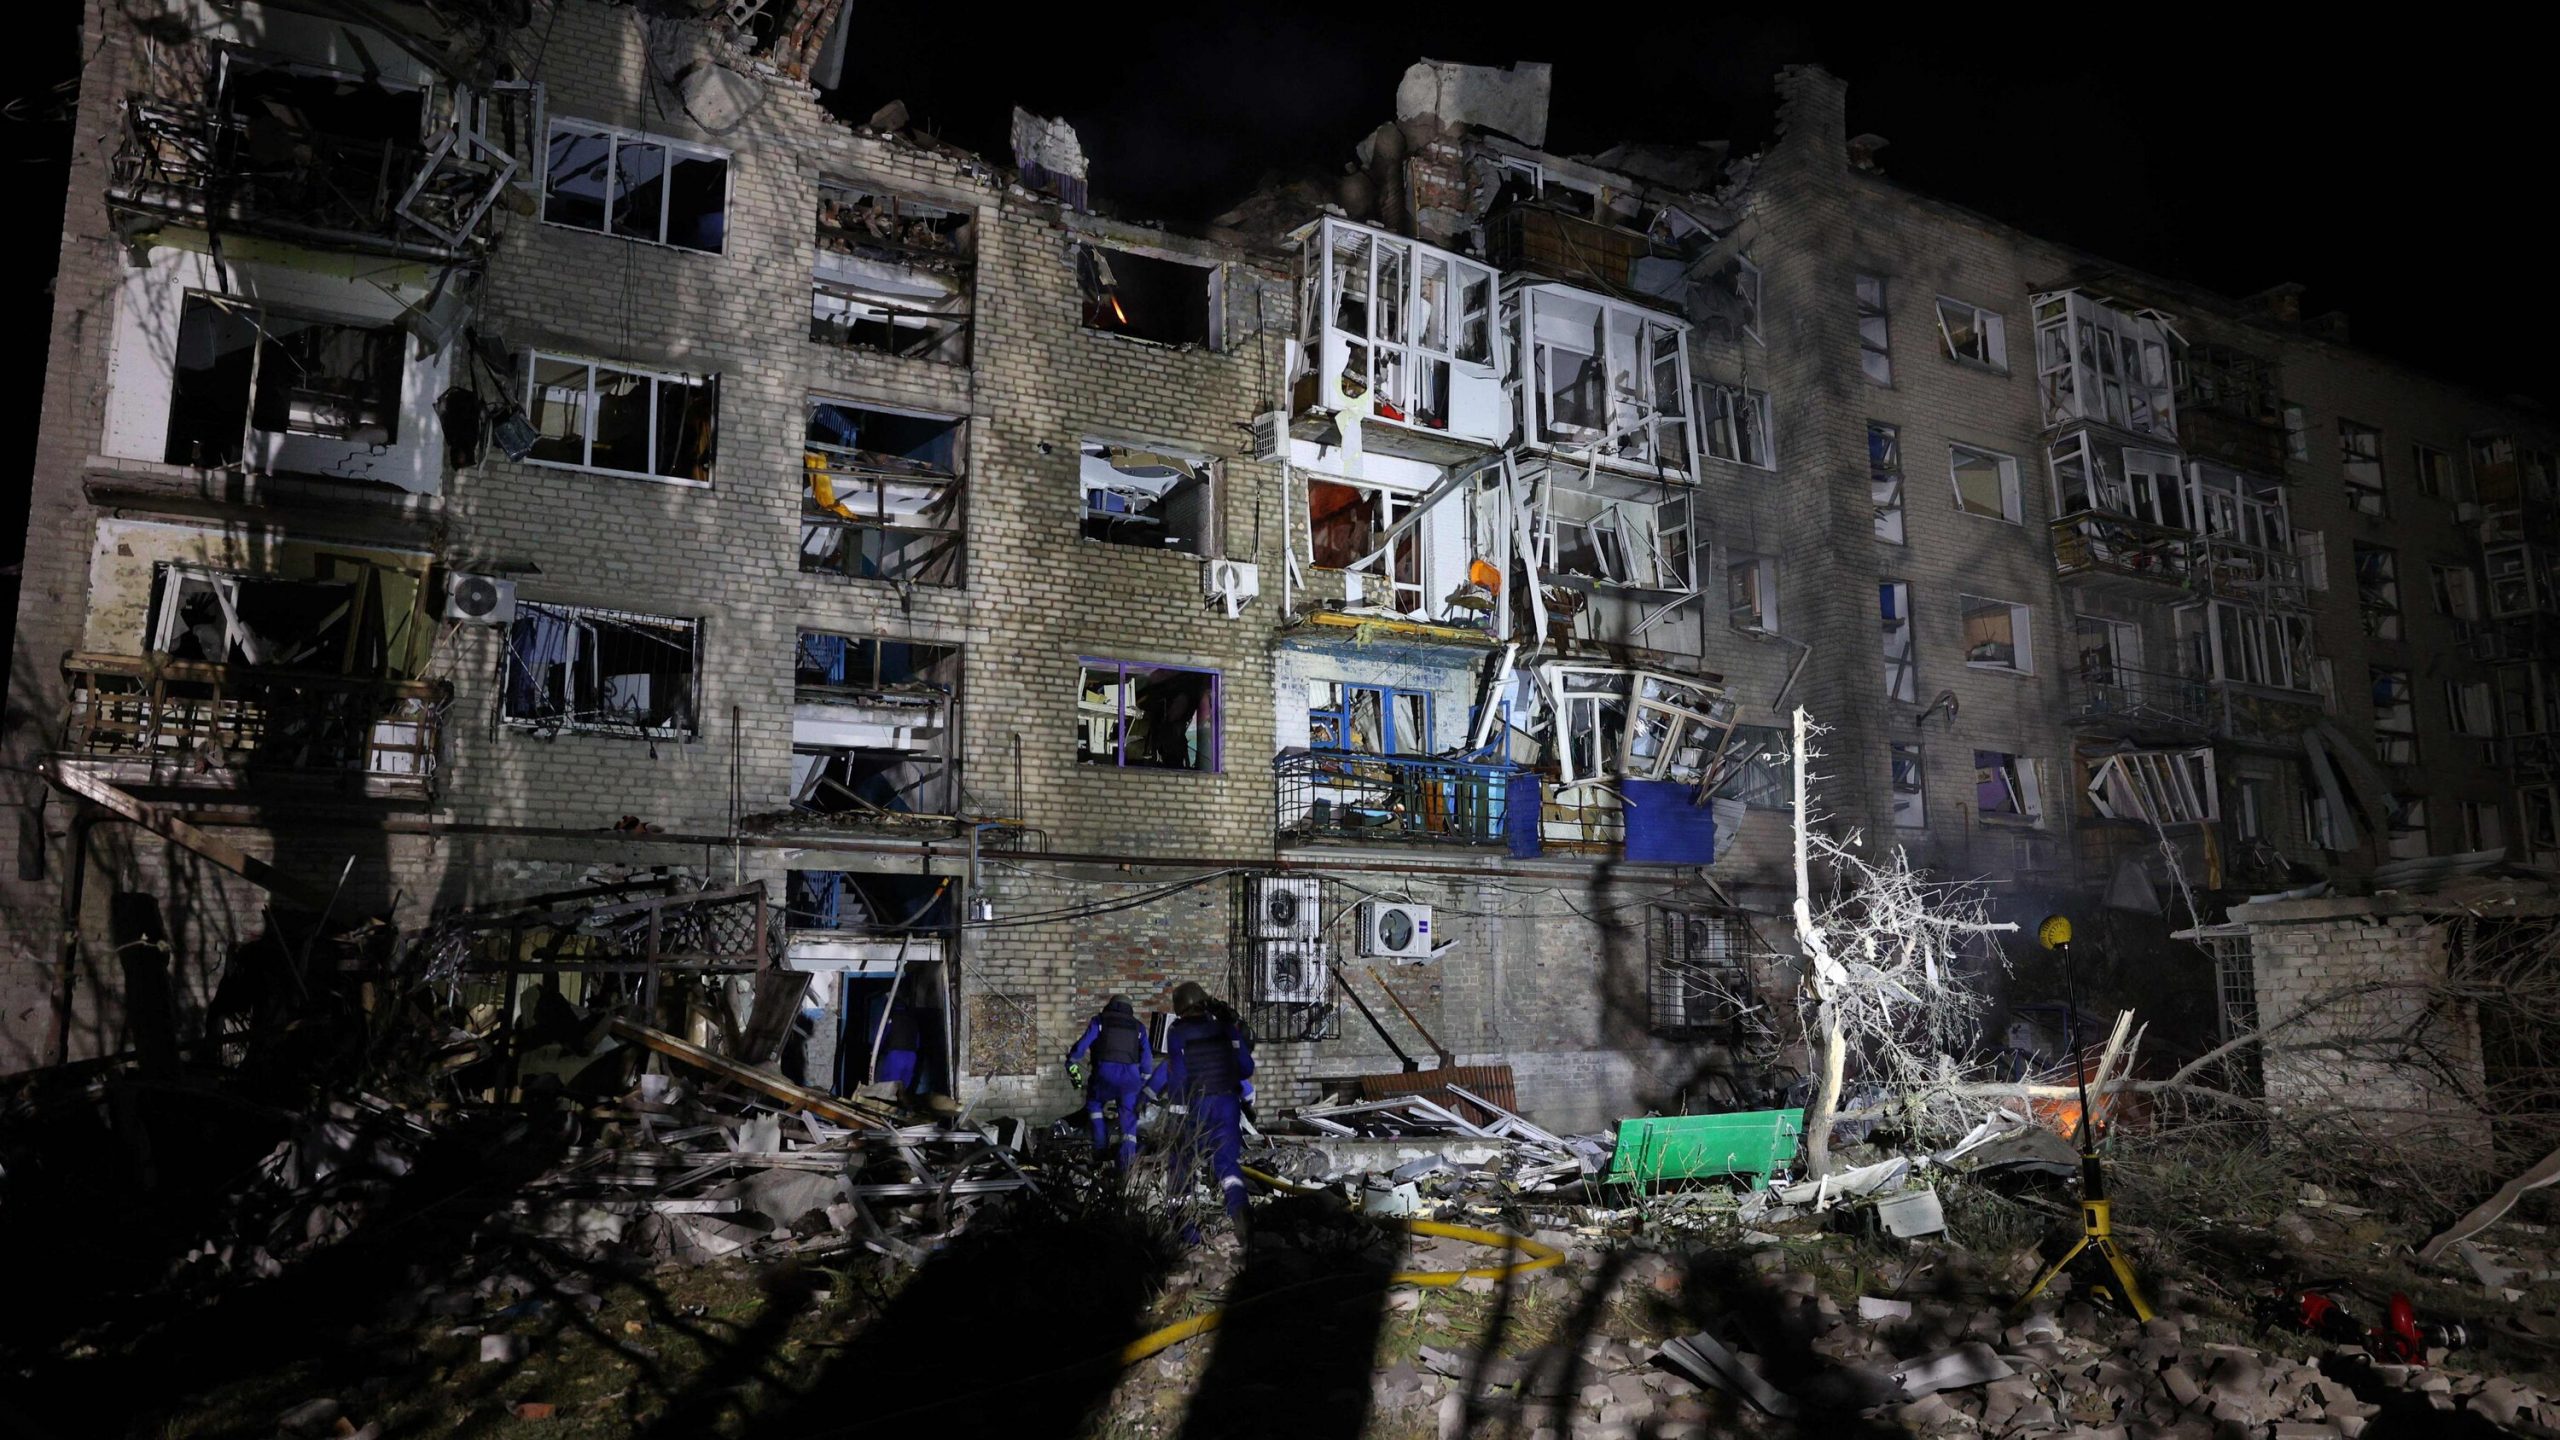 Ουκρανία: 7 οι νεκροί από ρωσικό πύραυλο που έπληξε πολυκατοικία στο Ποκρόφσκ (Ντονιέτσκ)